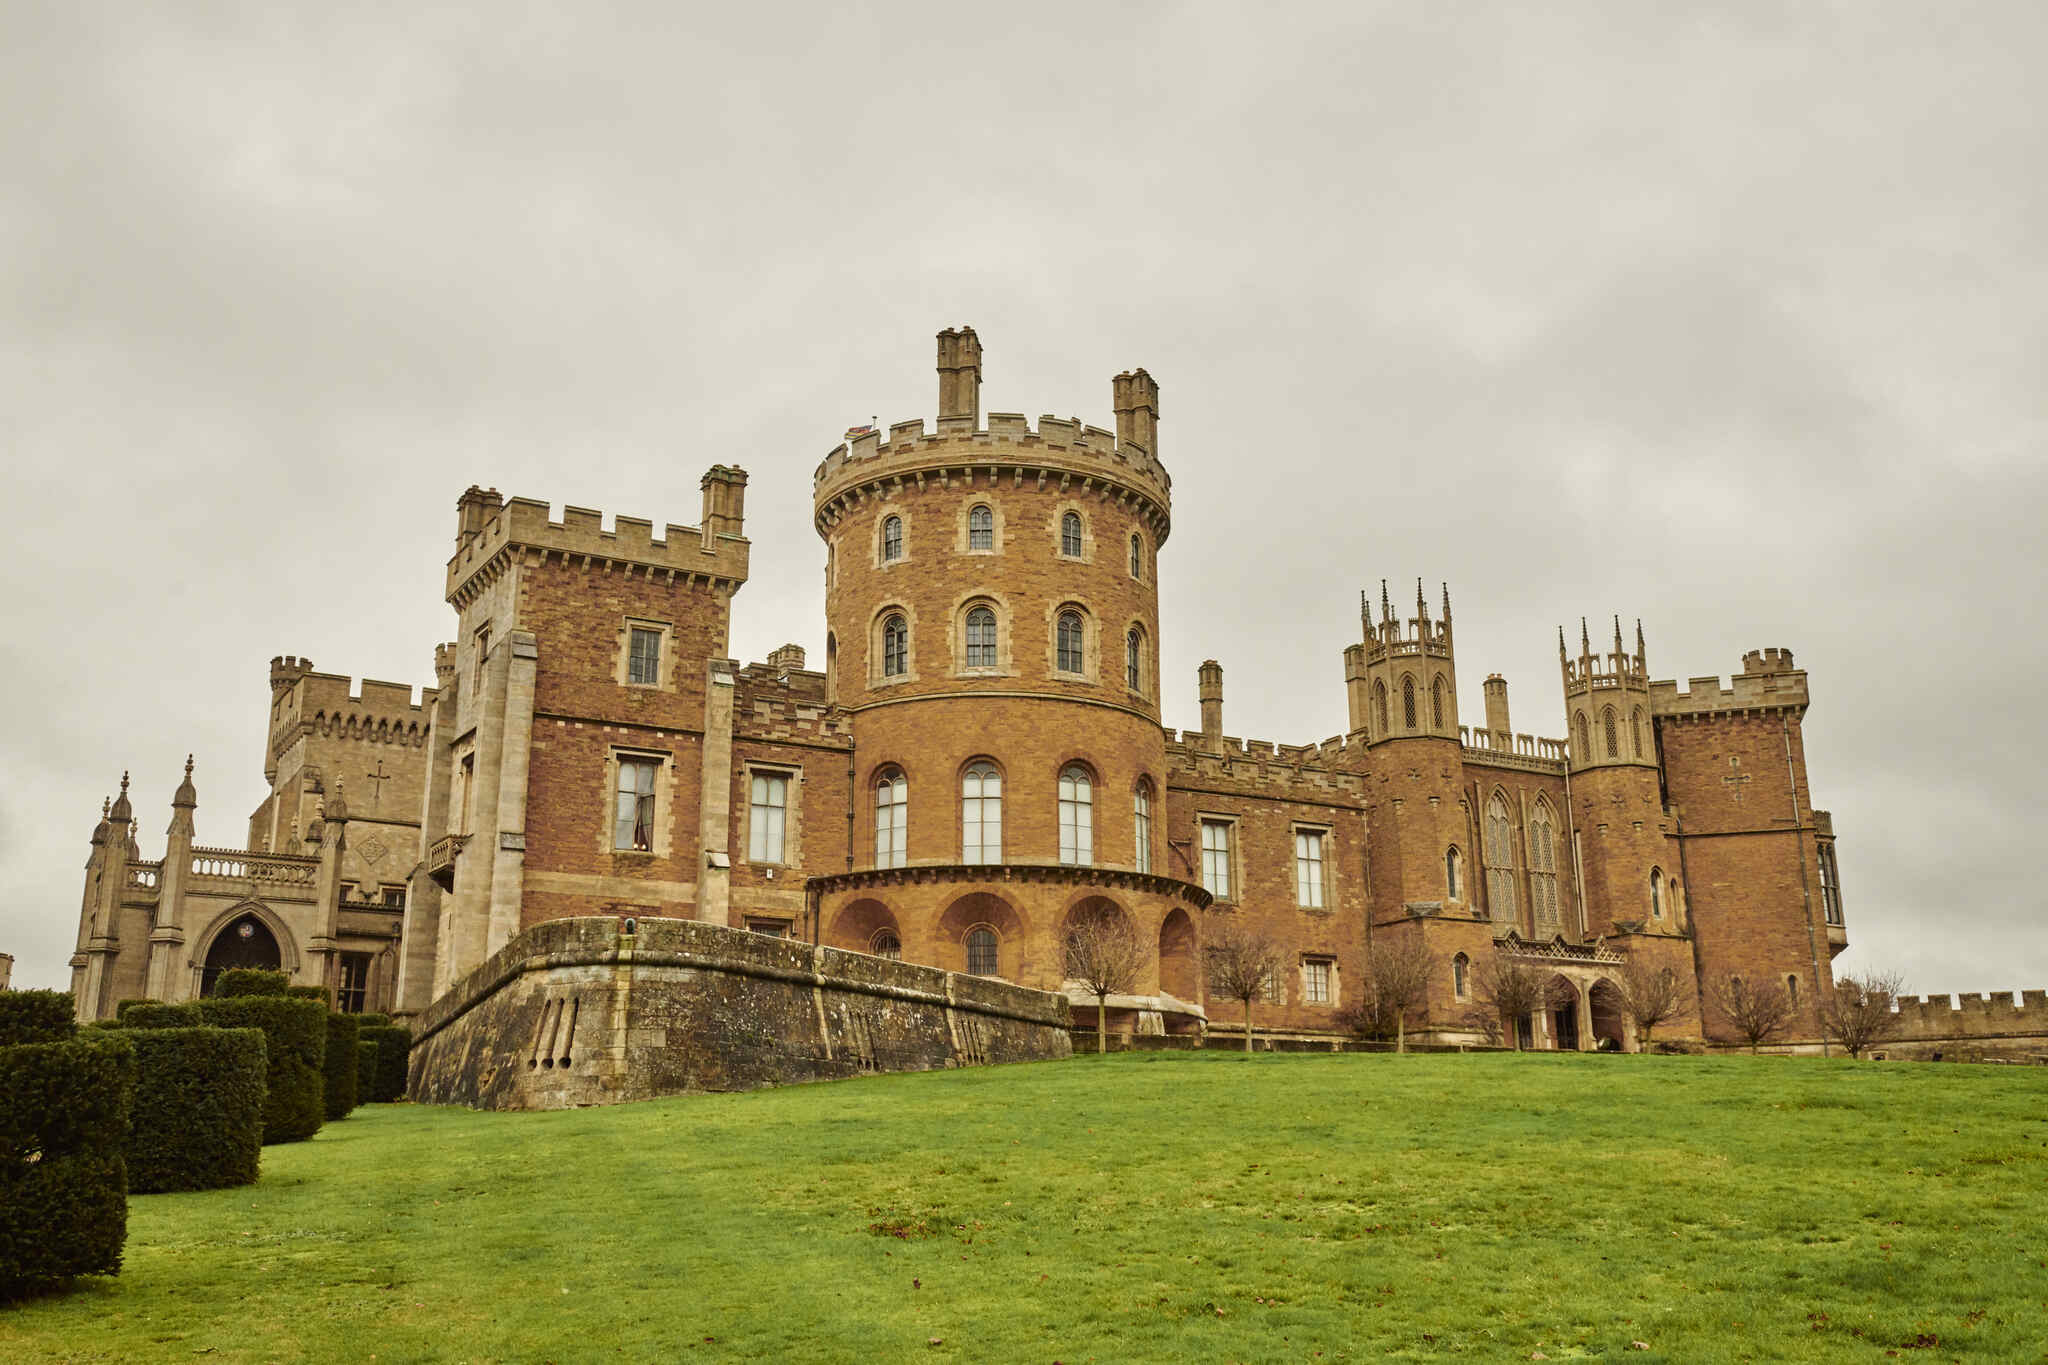 Pase un Año Nuevo como la realeza en el castillo de Belvoir, como en la serie The Crown con Airbnb